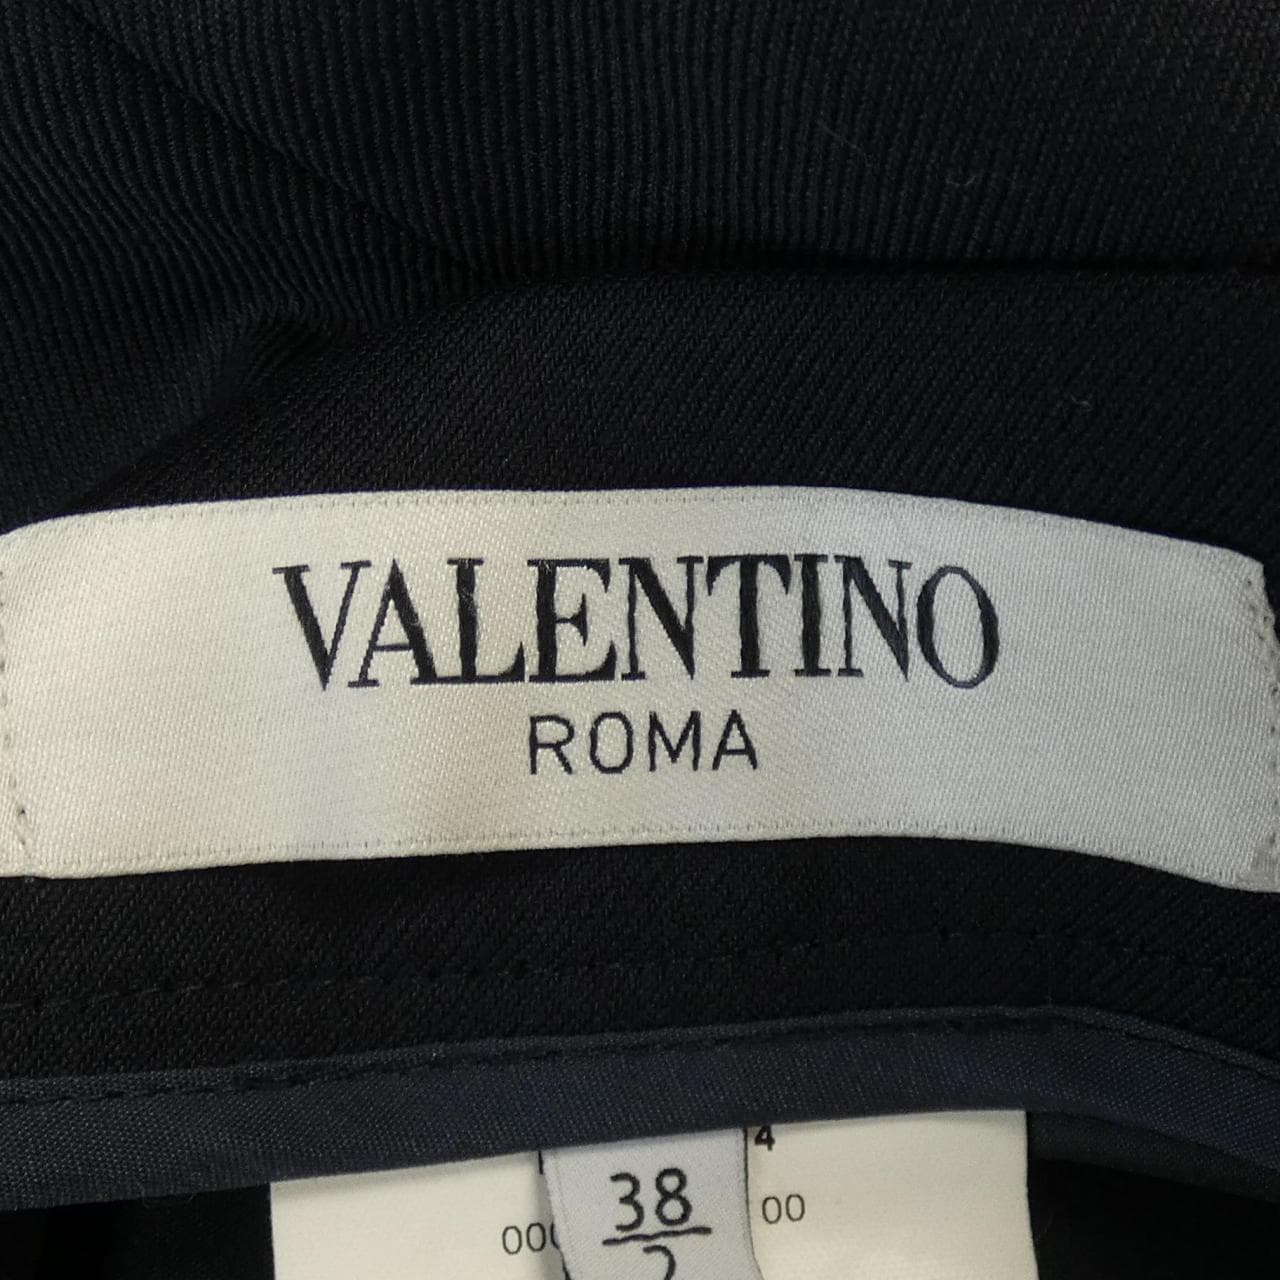 VALENTINO ROMA Skirt